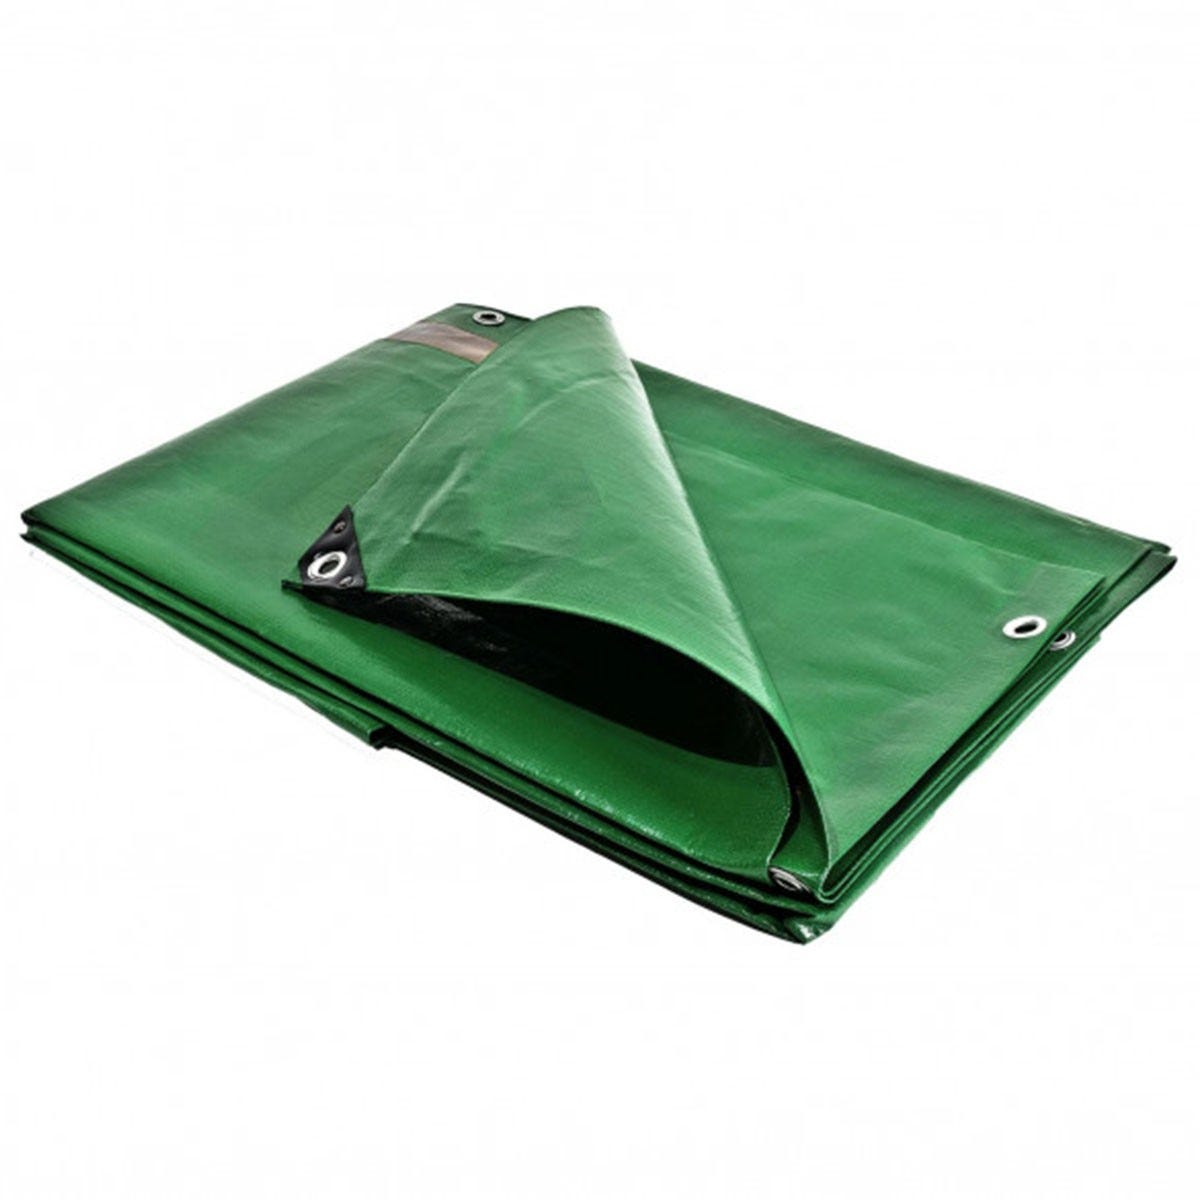 Bâche pergola 6 x 10 m Traitée Anti UV Toile pour tonnelle verte et marron polyéthylène 250g/m² haute qualité 2